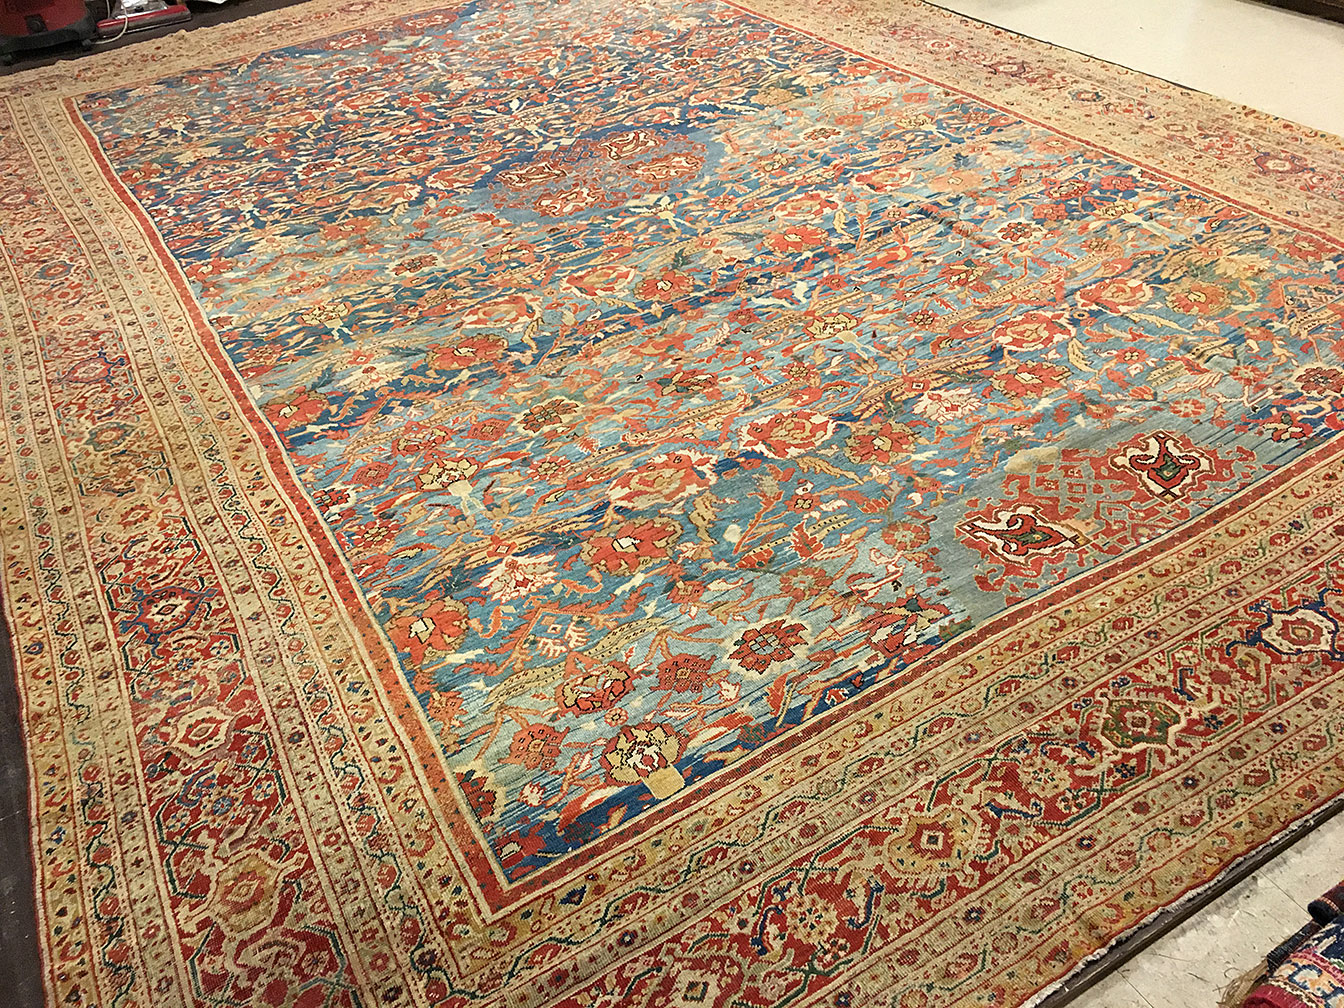 Antique sultan abad Carpet - # 52058